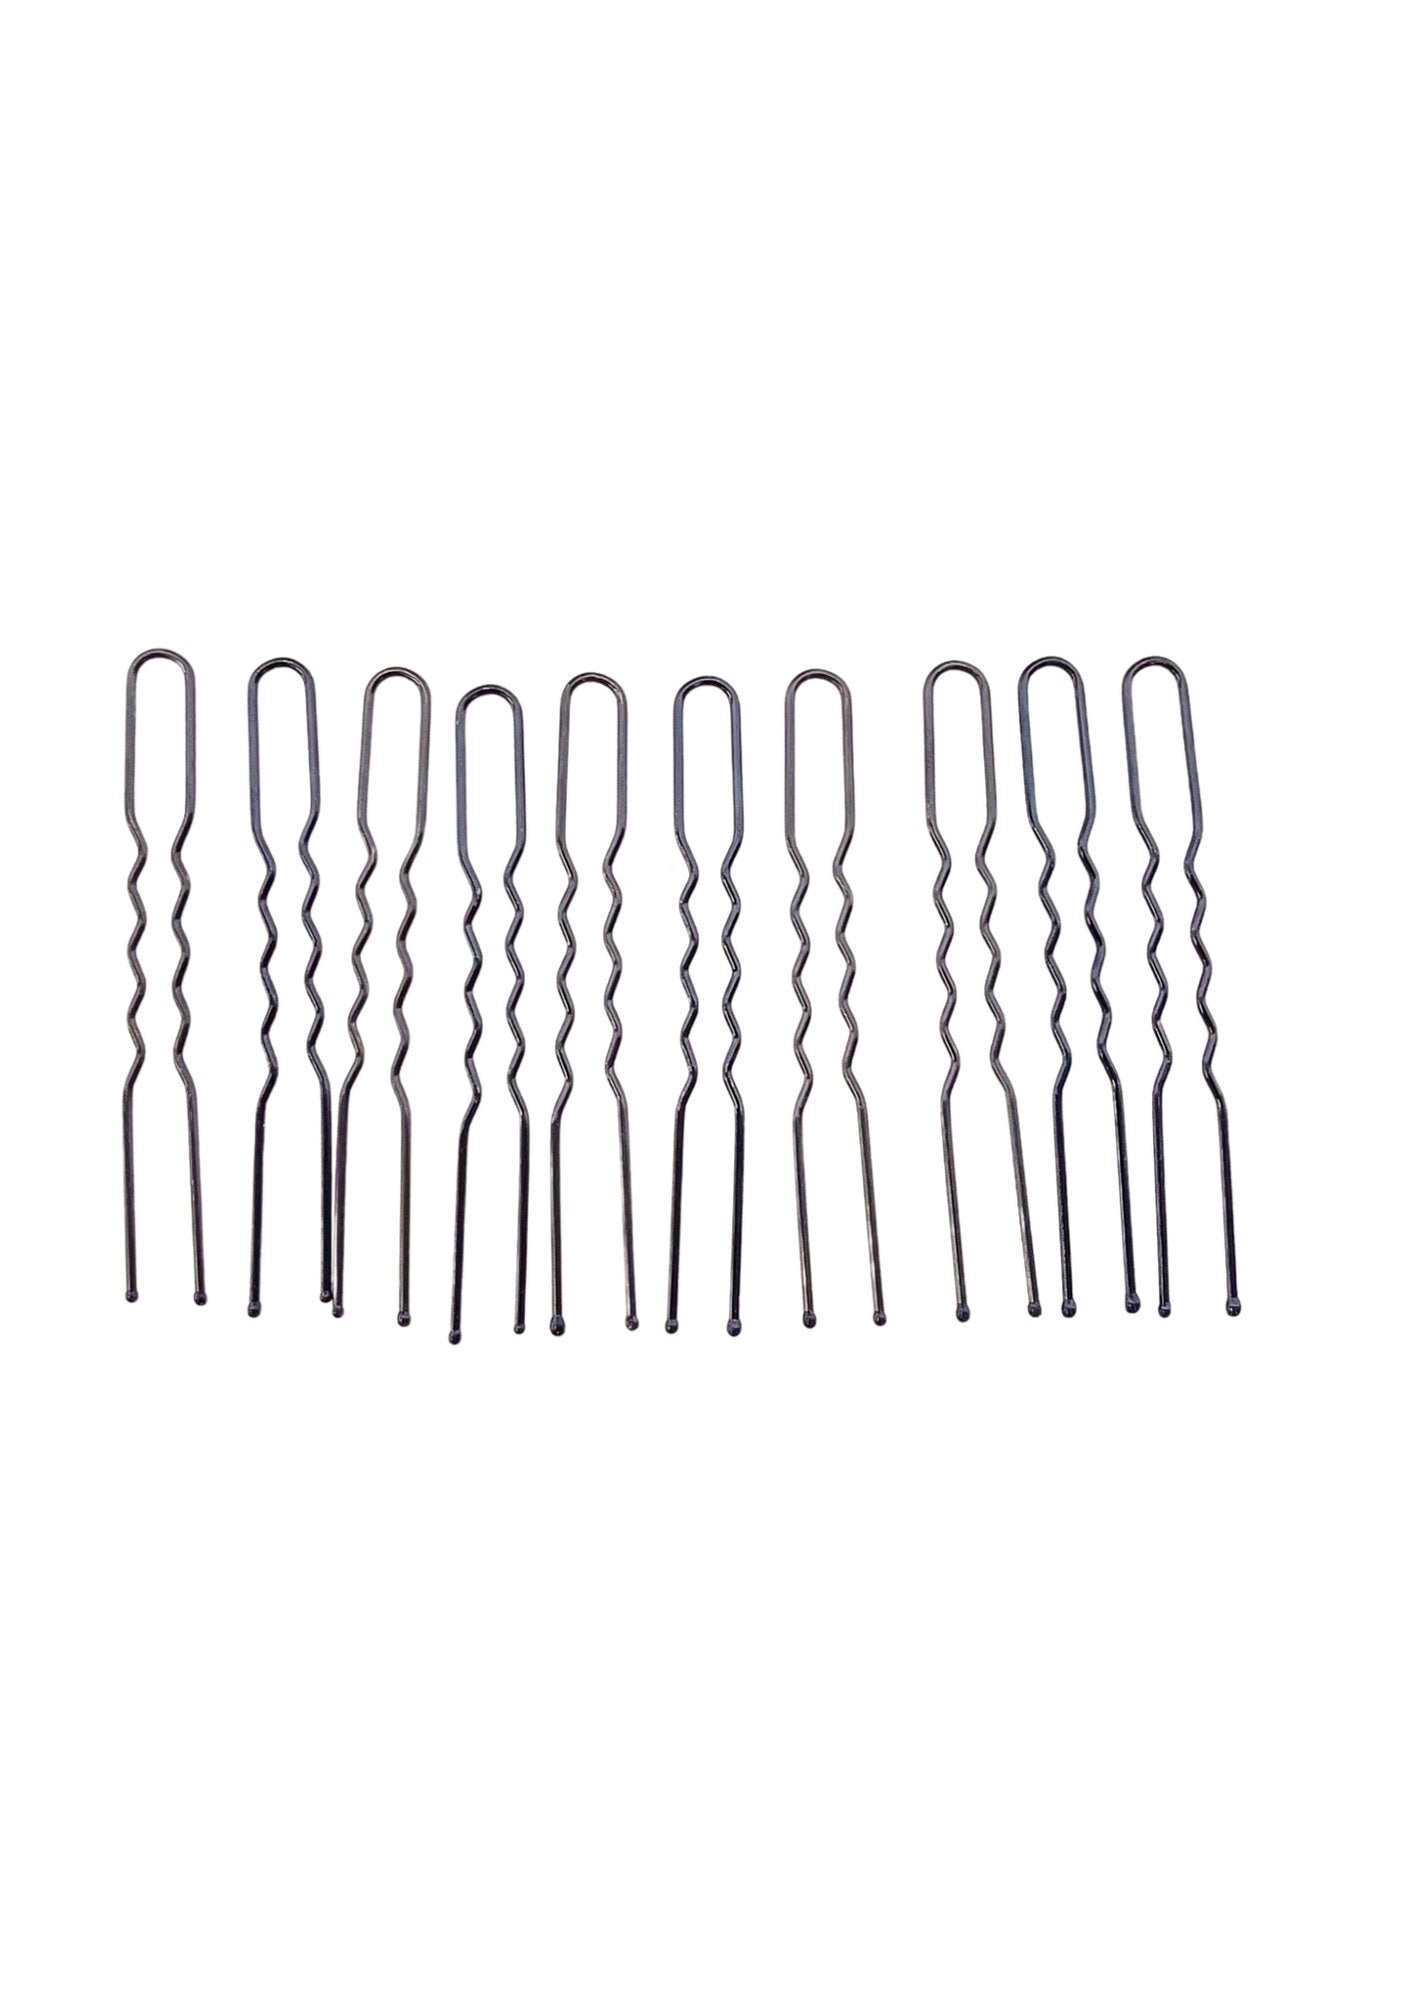 Aashi Beauty U-shaped Bobby Hair Pins (Pack of 100) - Aashi Beauty